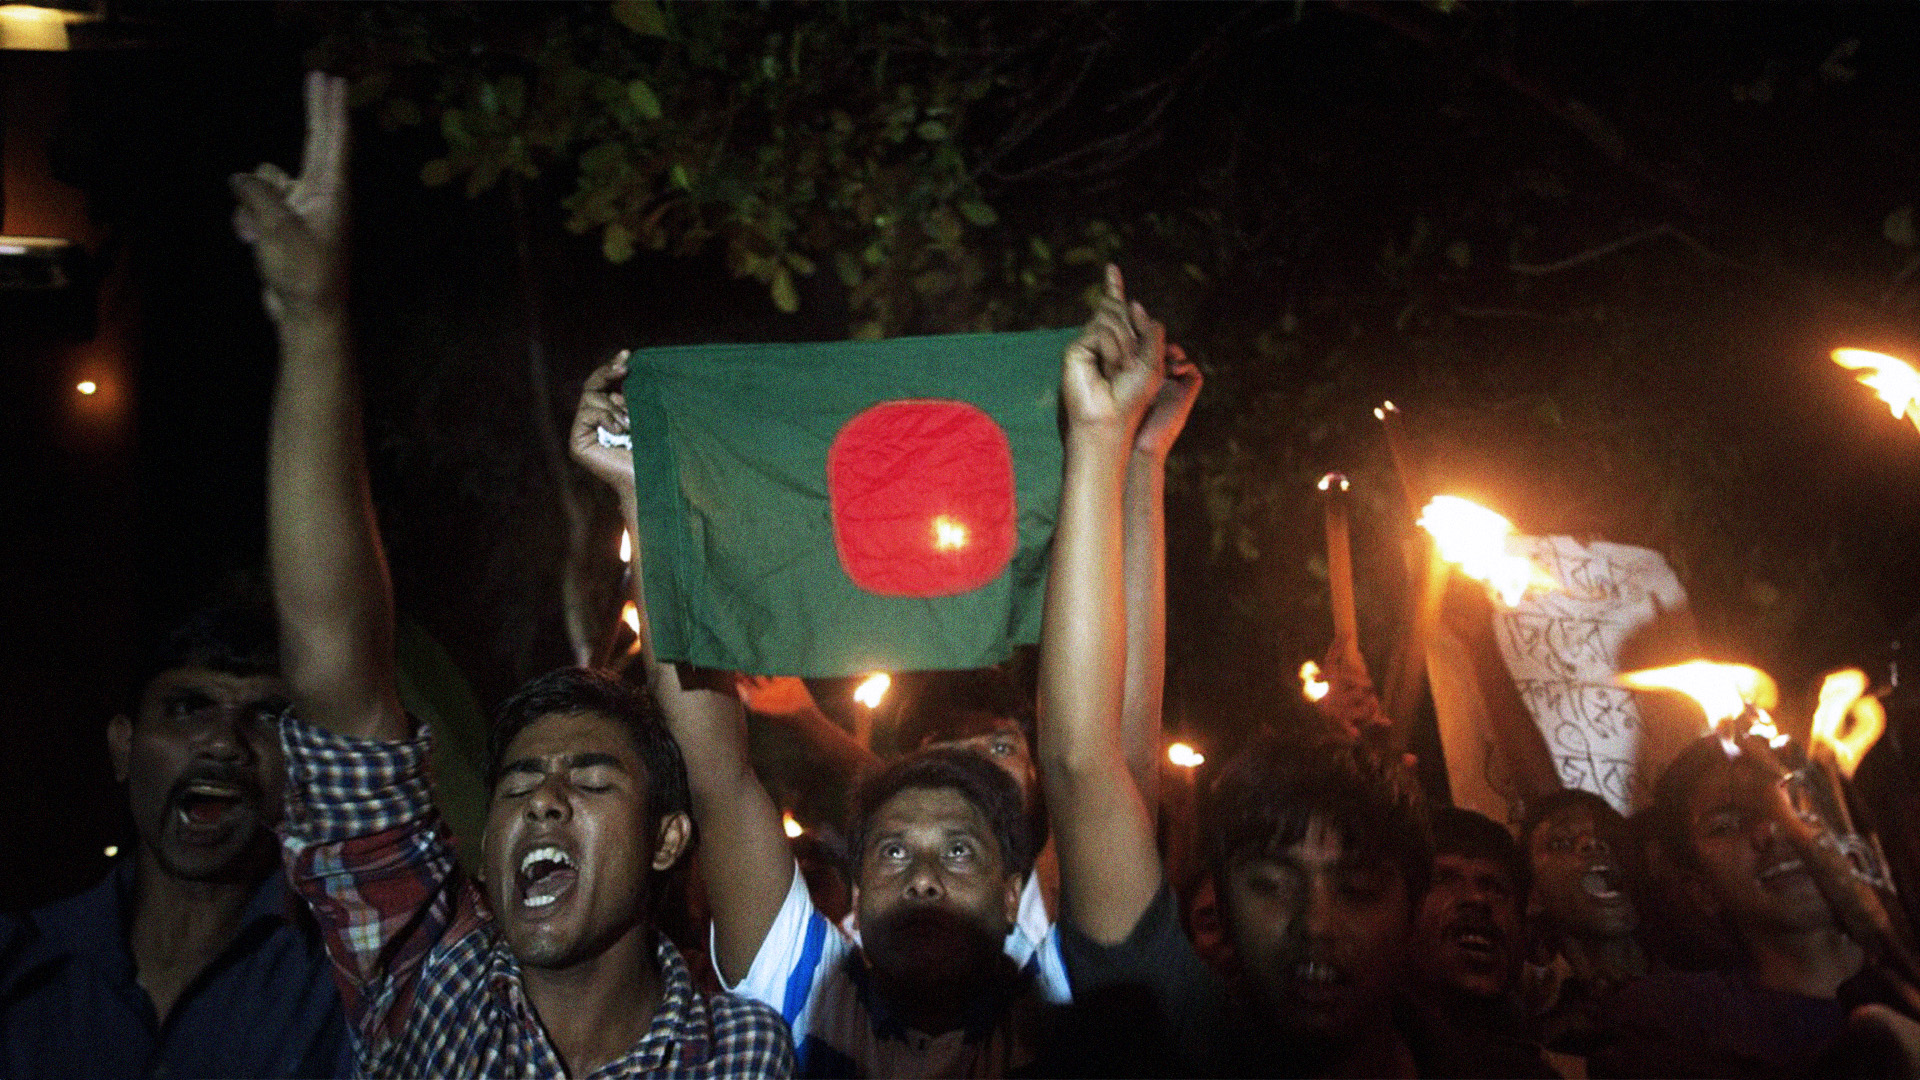 صورة لحظات من الرعب عاشتها الإمارات: مجموعة من البنغال يقولون شيئاً غير حاضر بوس